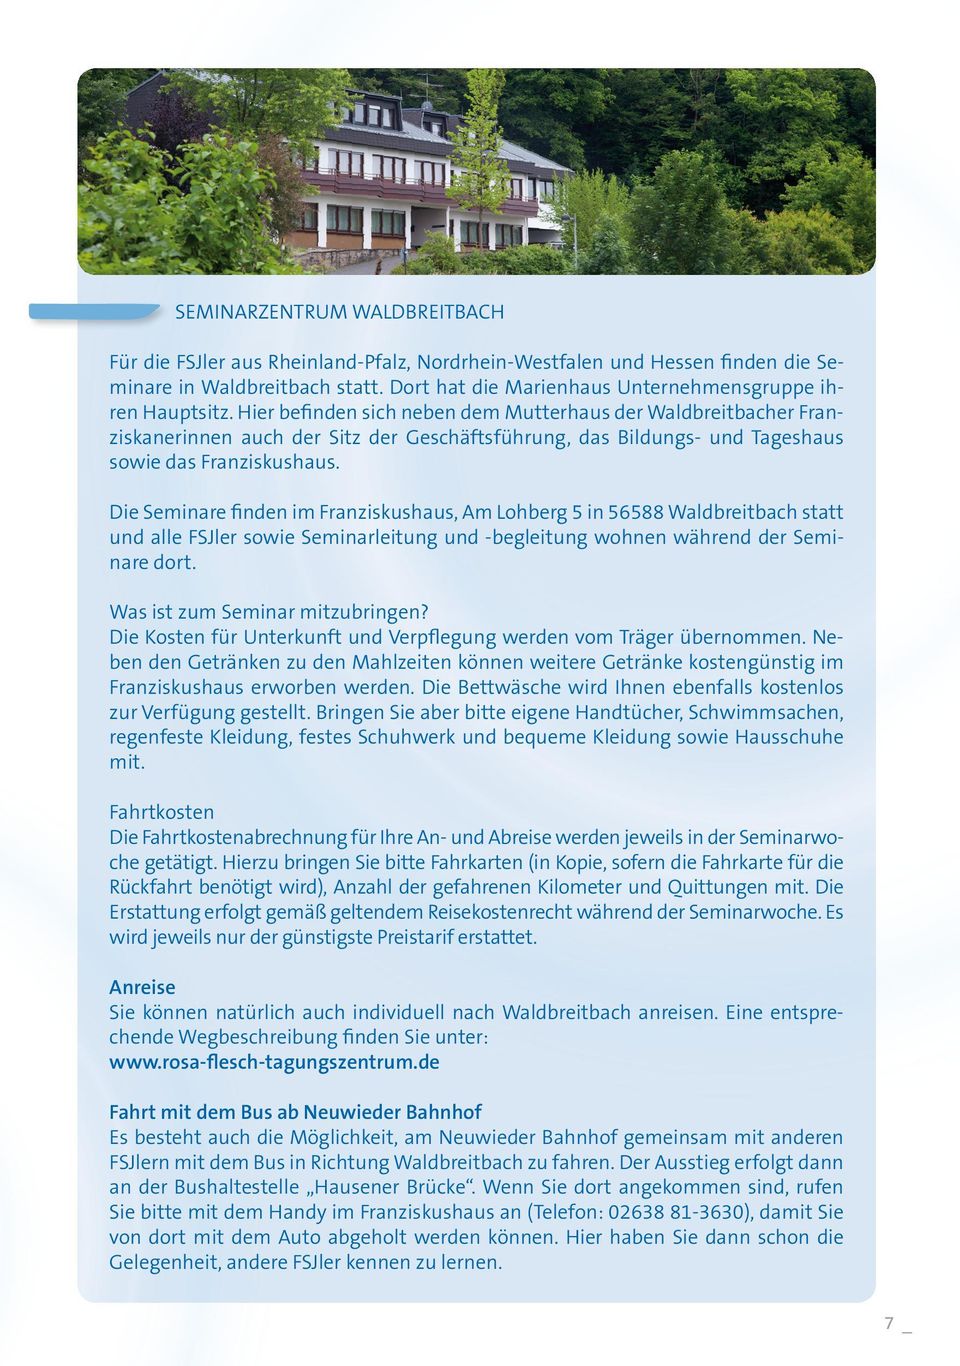 Die Seminare finden im Franziskushaus, Am Lohberg 5 in 56588 Waldbreitbach statt und alle FSJler sowie Seminarleitung und -begleitung wohnen während der Seminare dort.